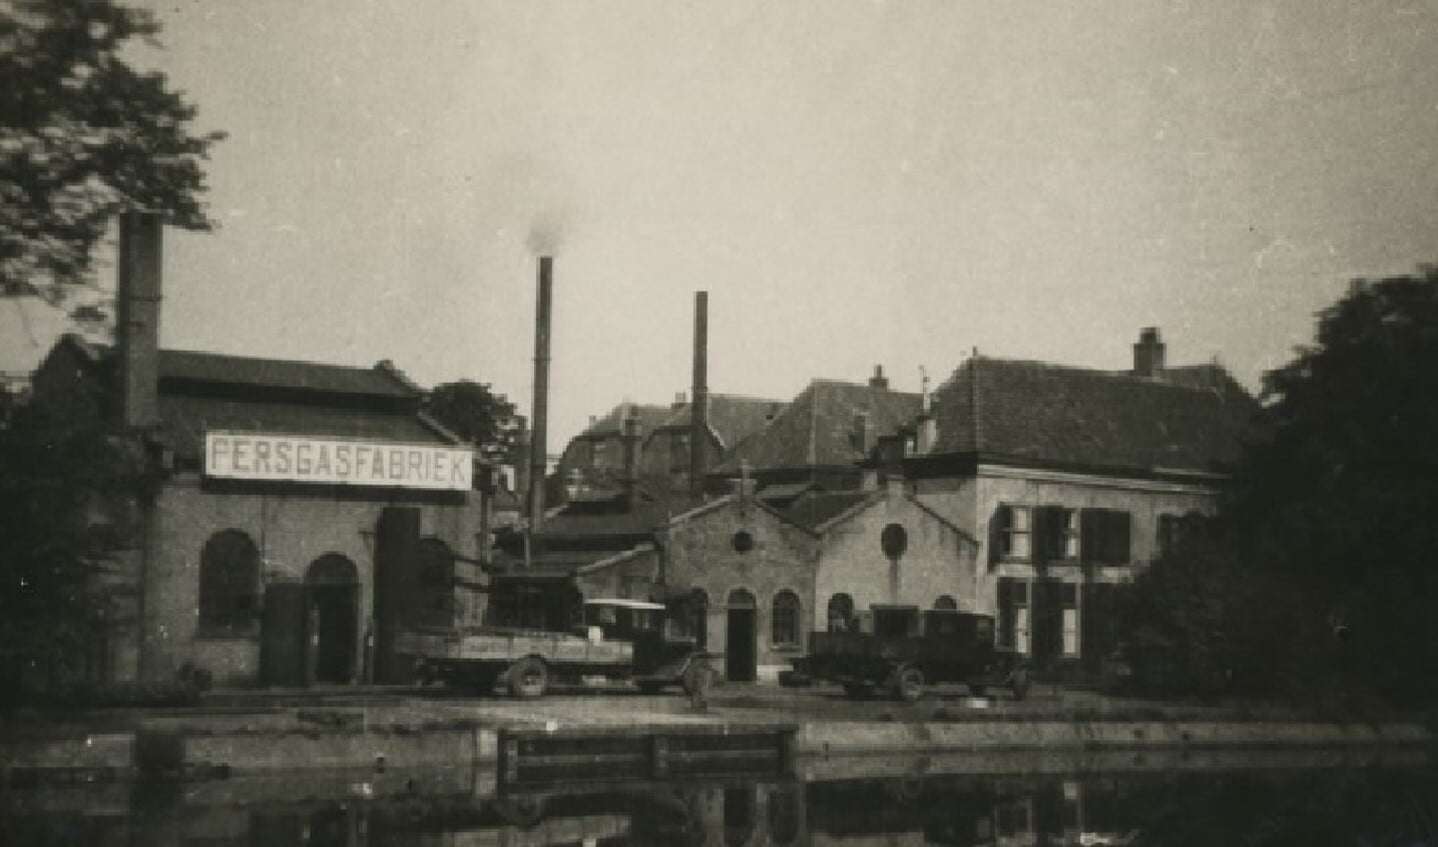 De persgasfabriek in de tuin van buitenplaats Middendorp